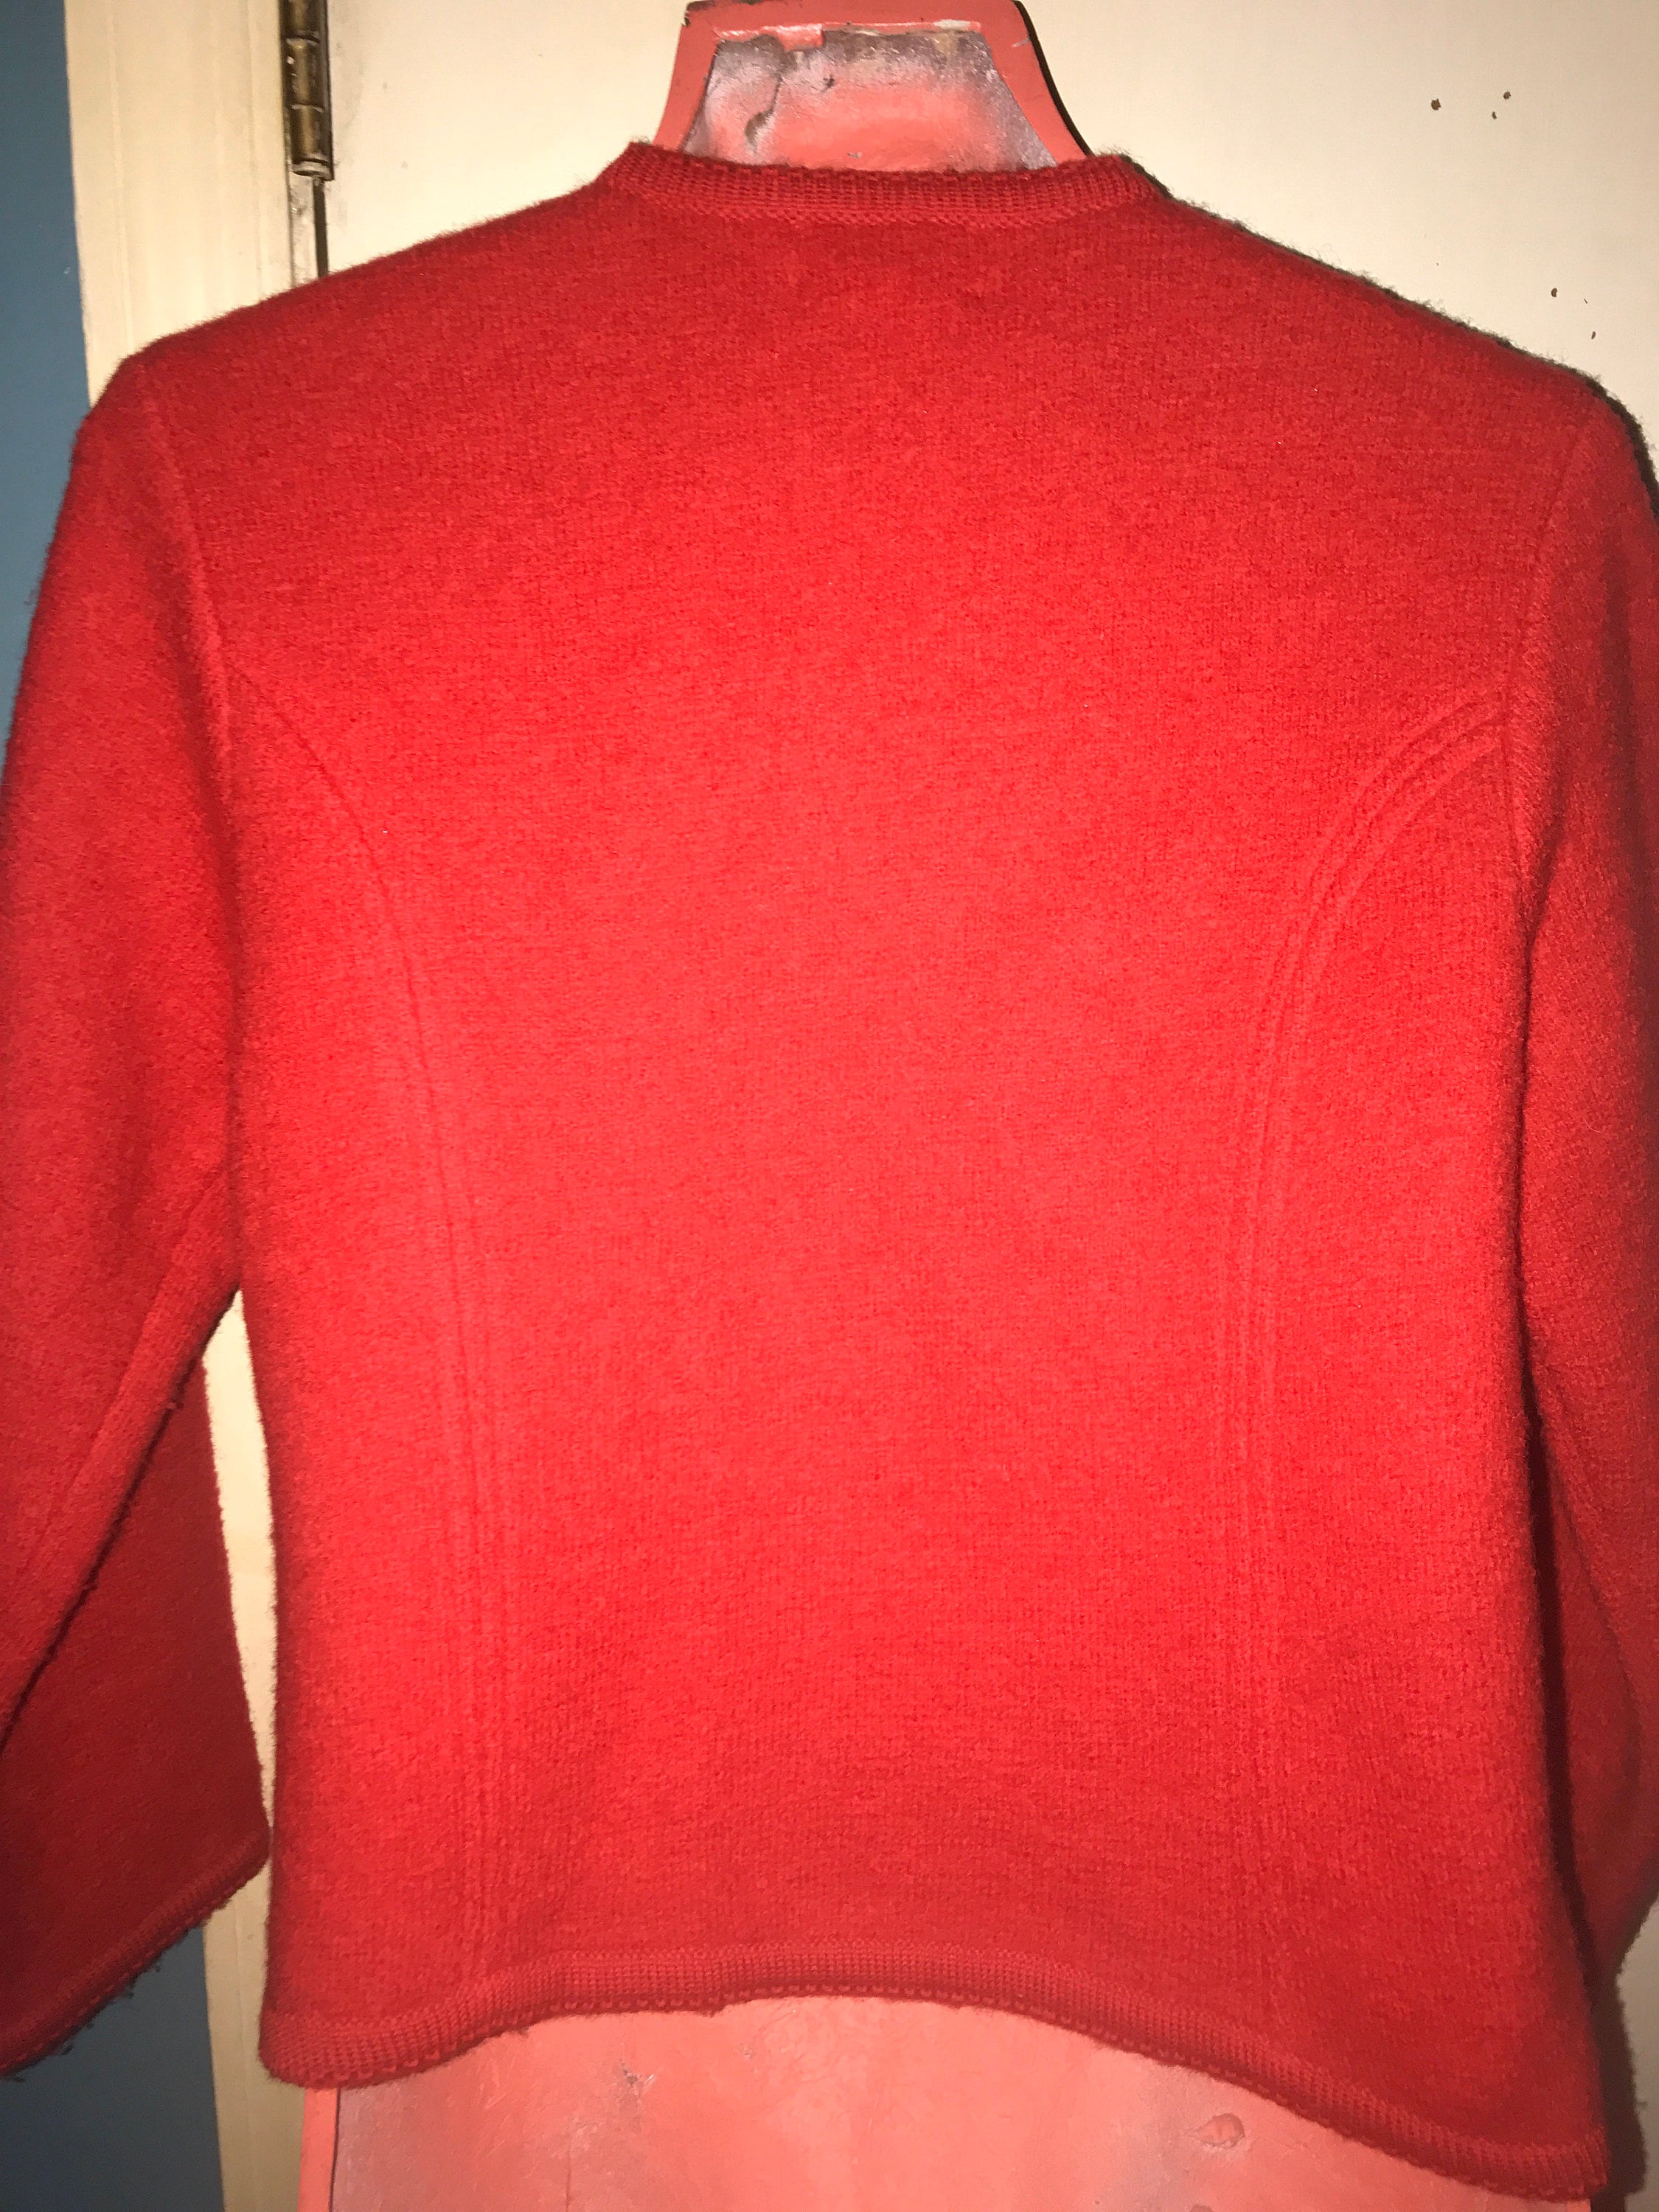 Vintage Pendleton Red Wool Sweater. Women’s Pendleton Wool Sweater. Red ...